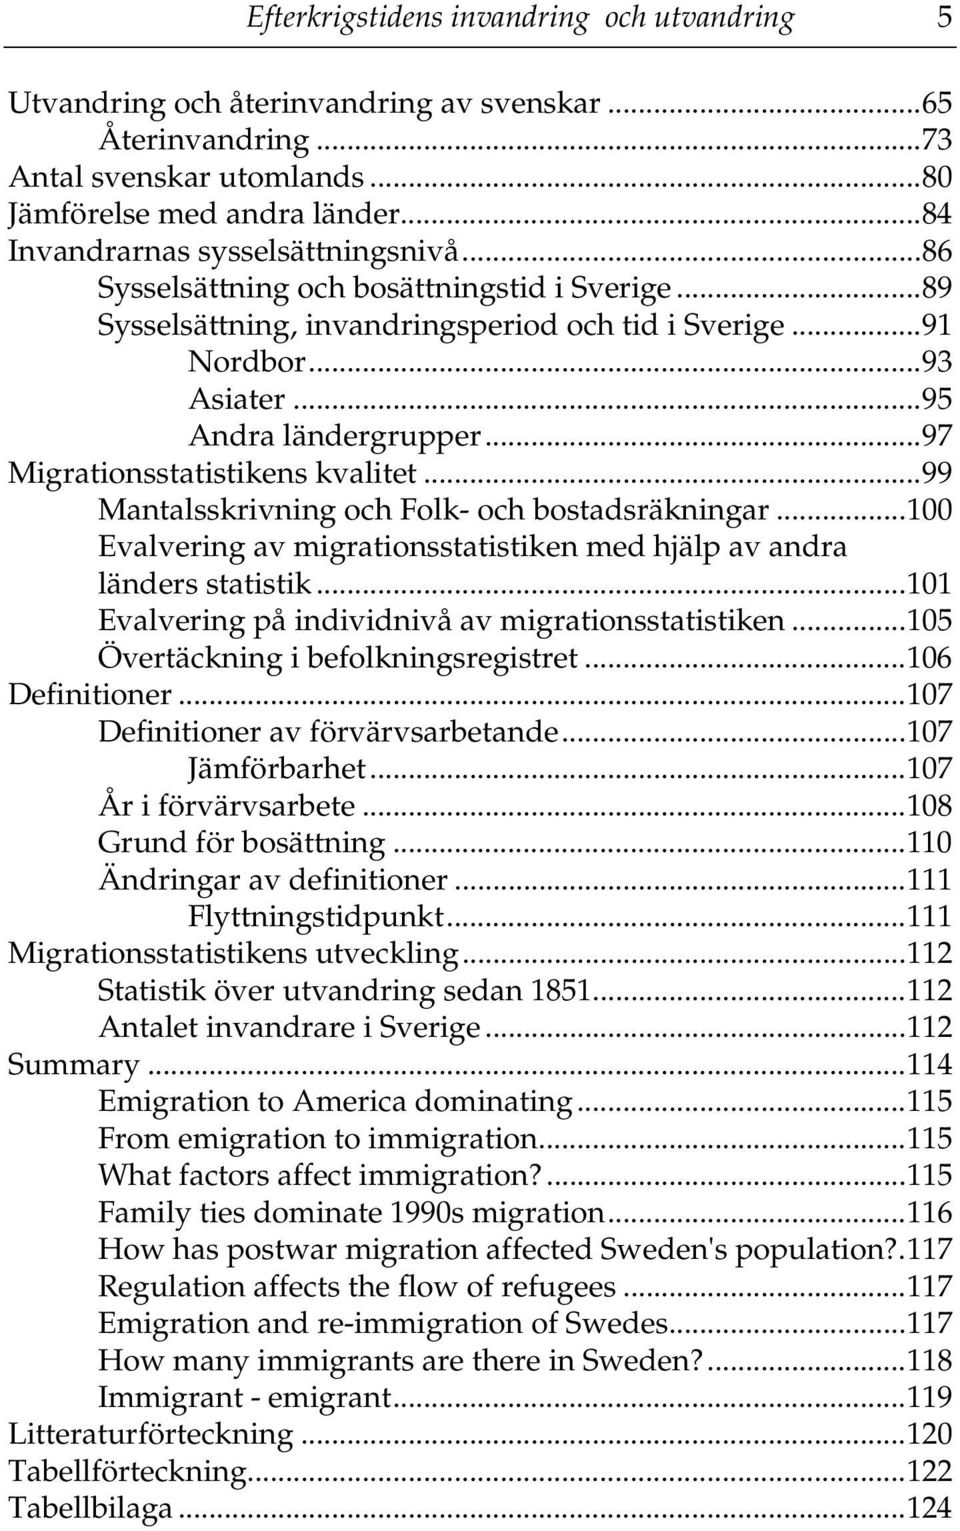 ..97 Migrationsstatistikens kvalitet...99 Mantalsskrivning och Folk- och bostadsräkningar...100 Evalvering av migrationsstatistiken med hjälp av andra länders statistik.